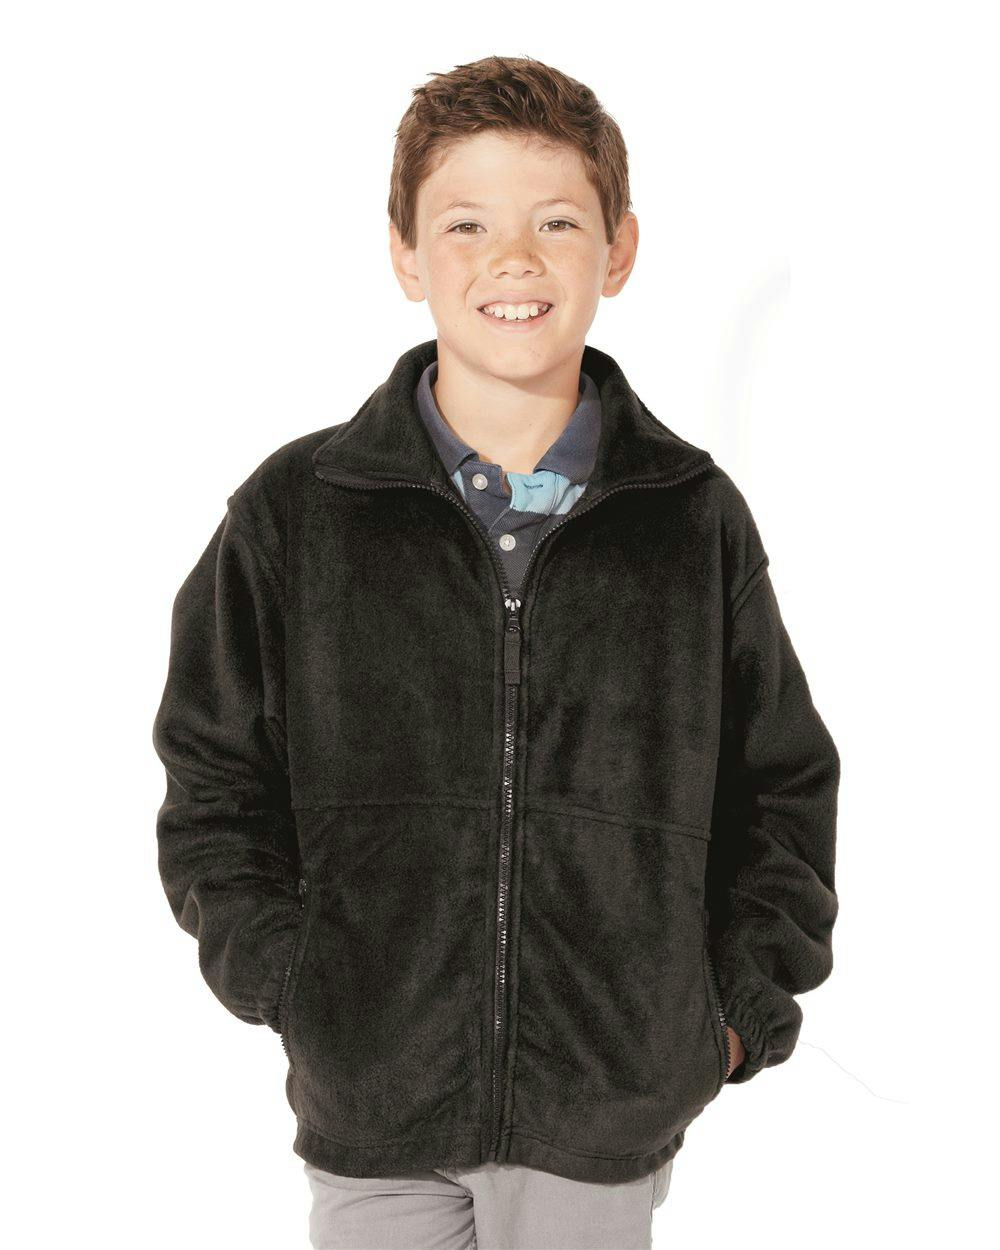 Image for Youth Fleece Full-Zip Jacket - 4061